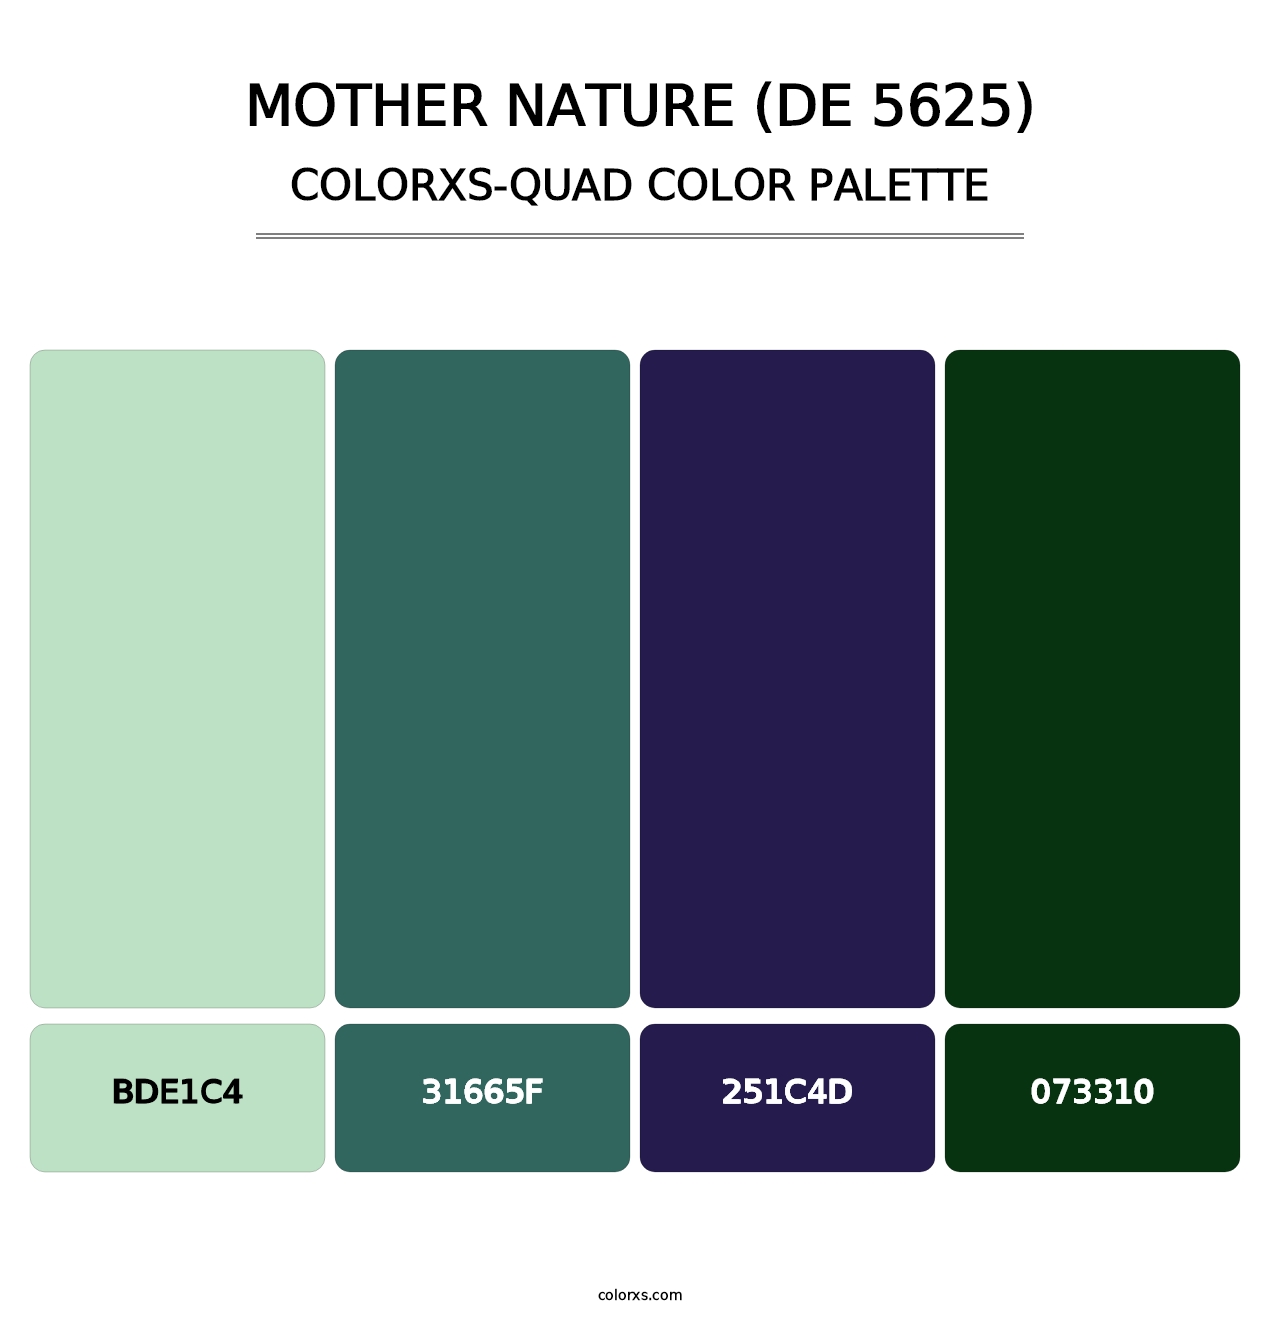 Mother Nature (DE 5625) - Colorxs Quad Palette